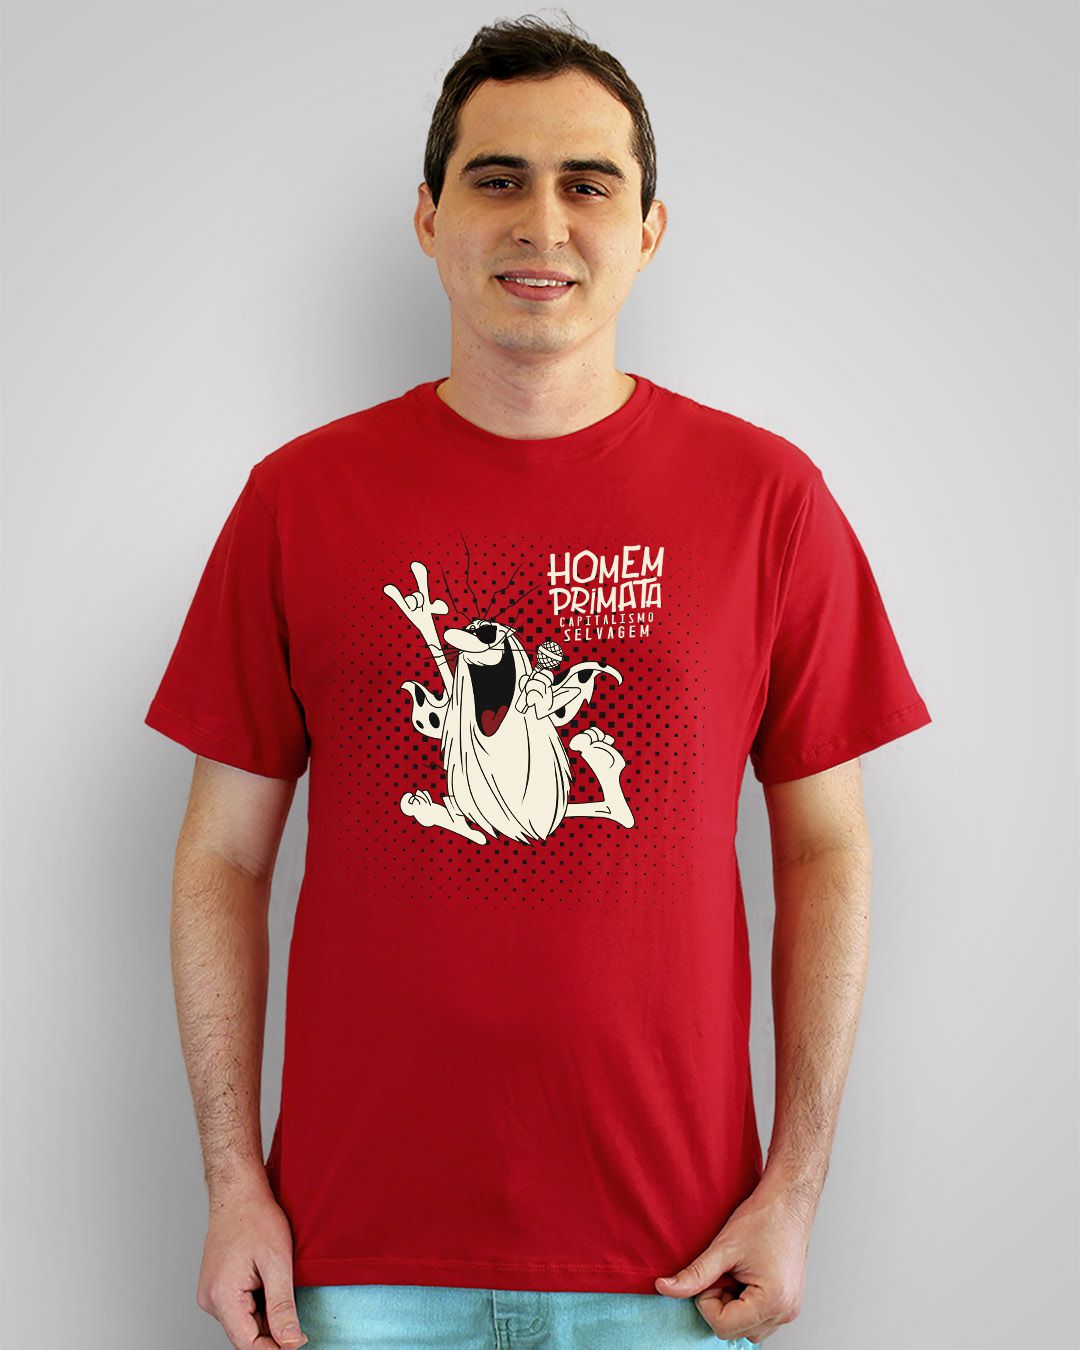 Camiseta Homem Primata, Capitalismo Selvagem - Titãs